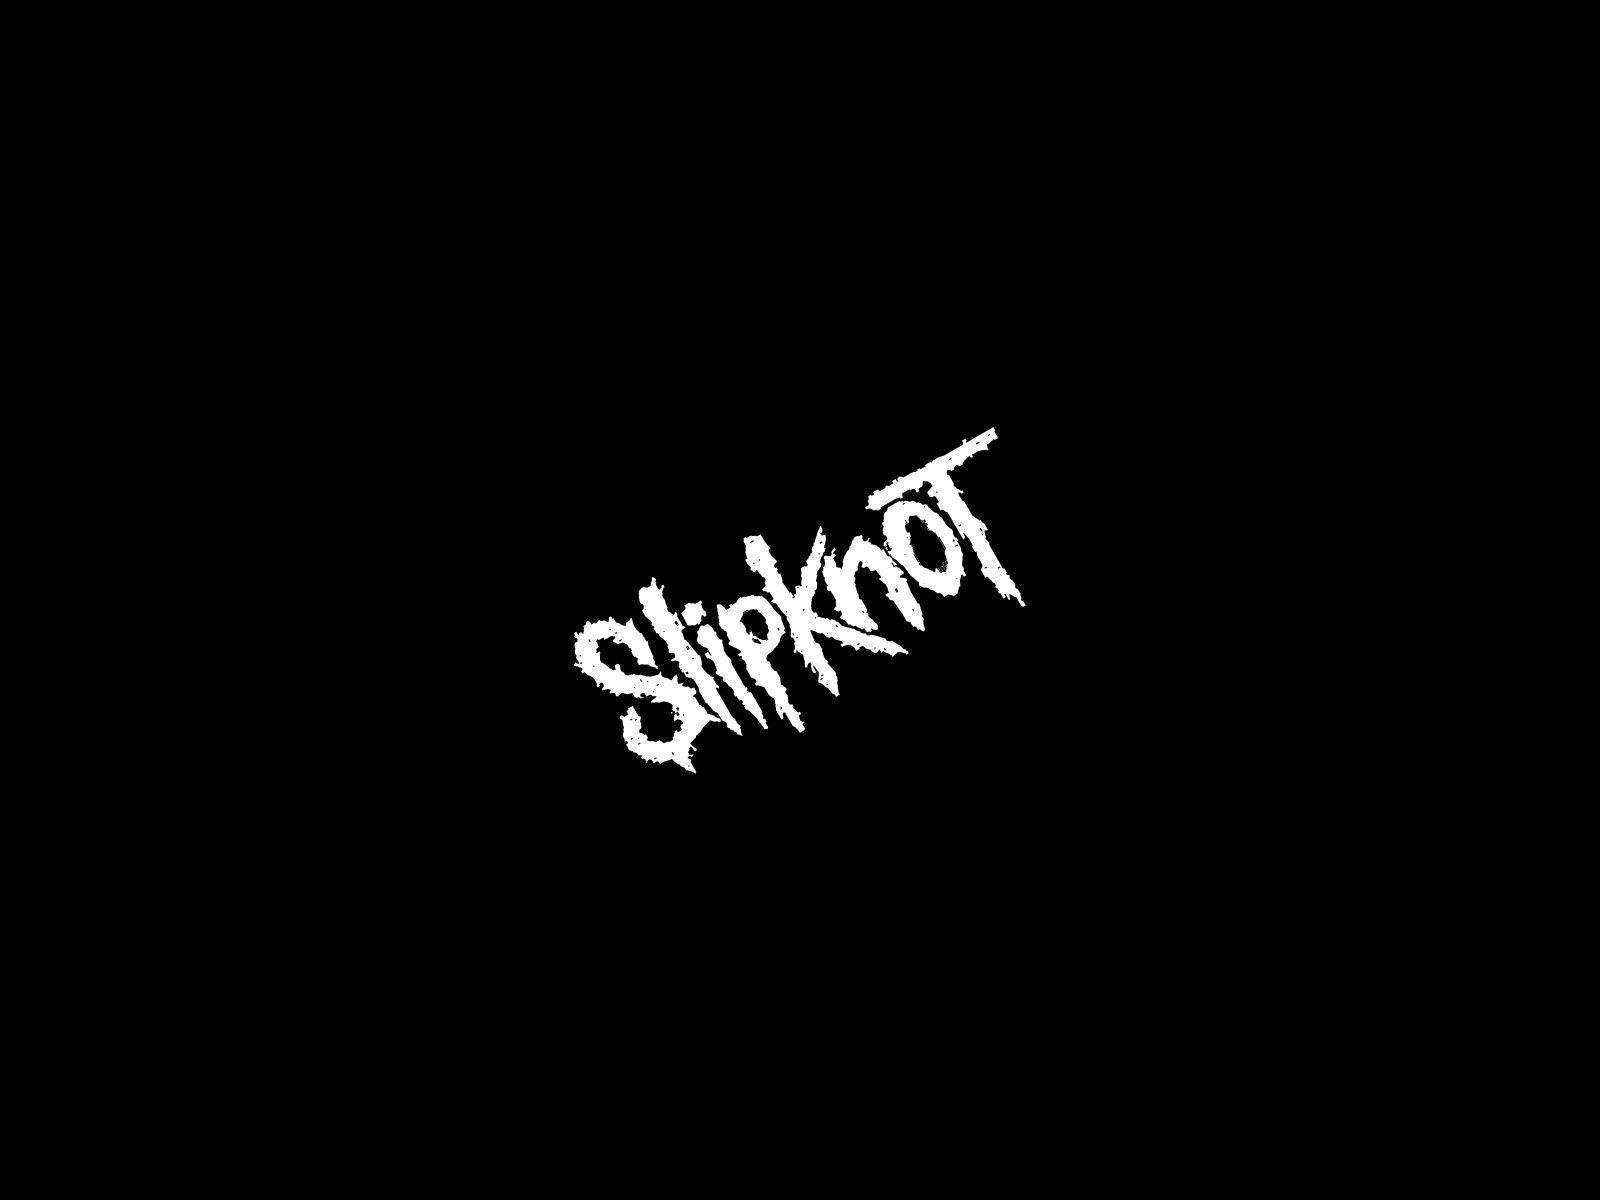 Image For > Slipknot Star Logo Wallpapers